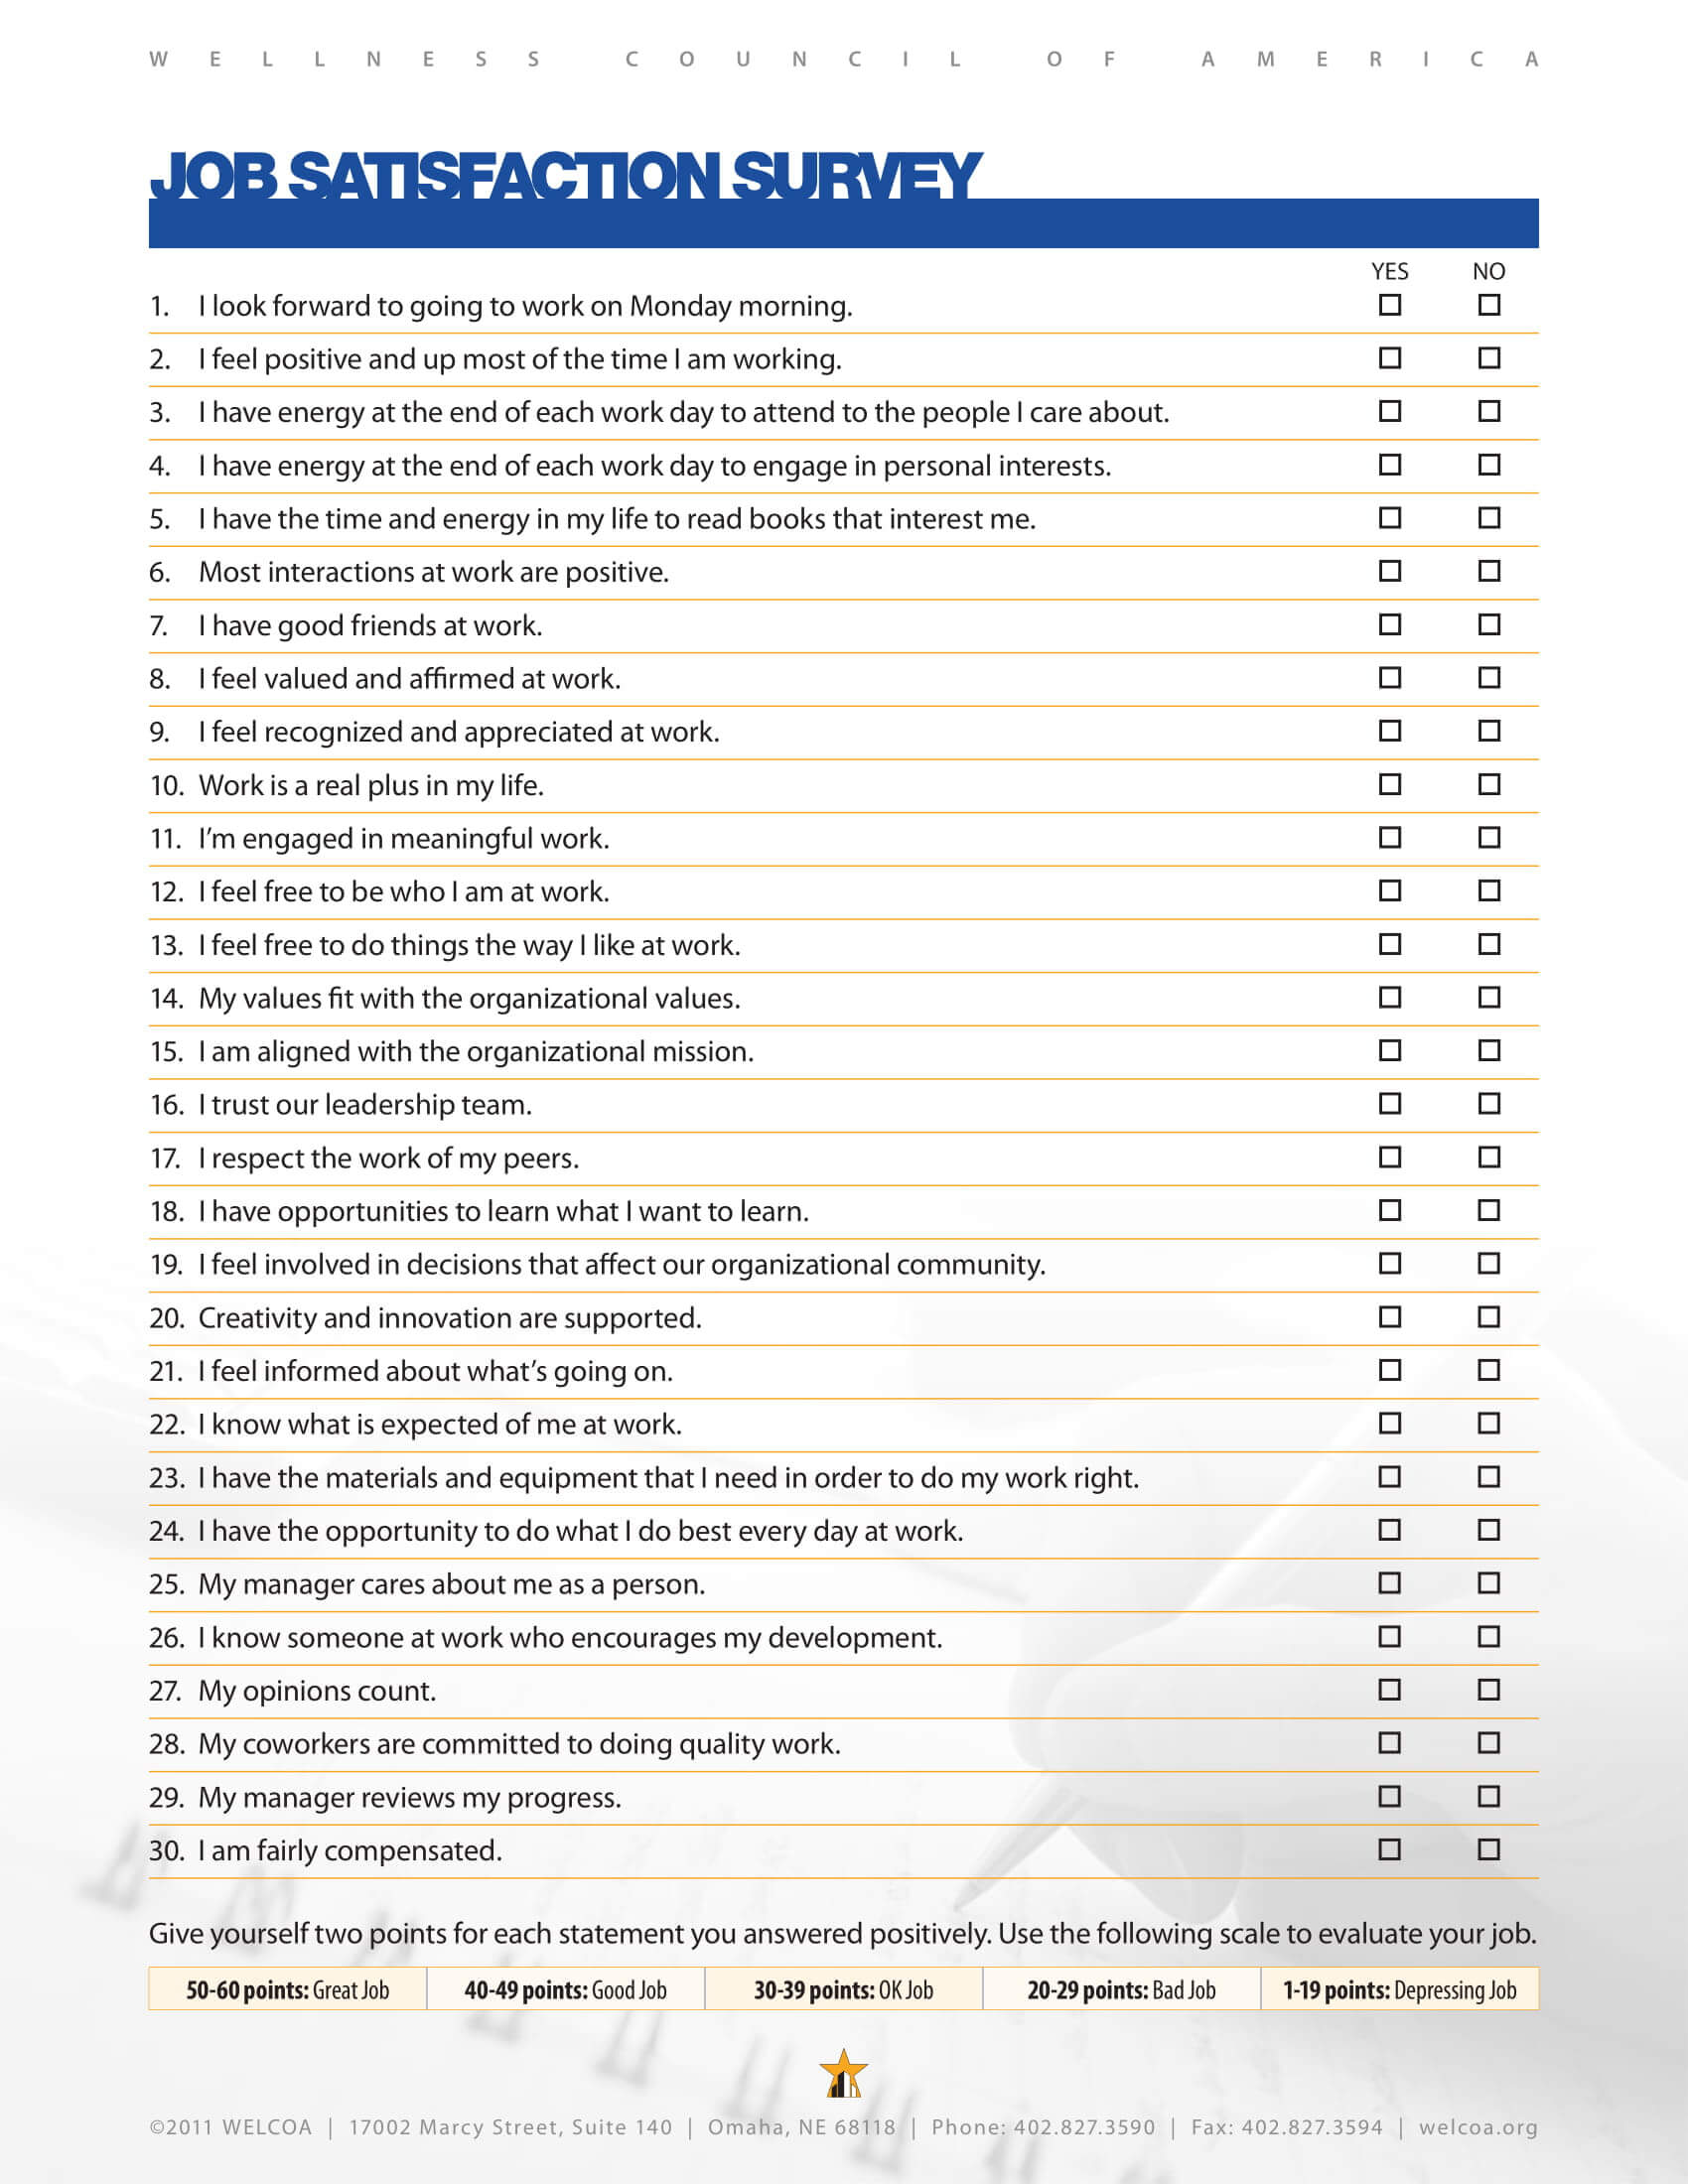 Social work job satisfaction survey templates